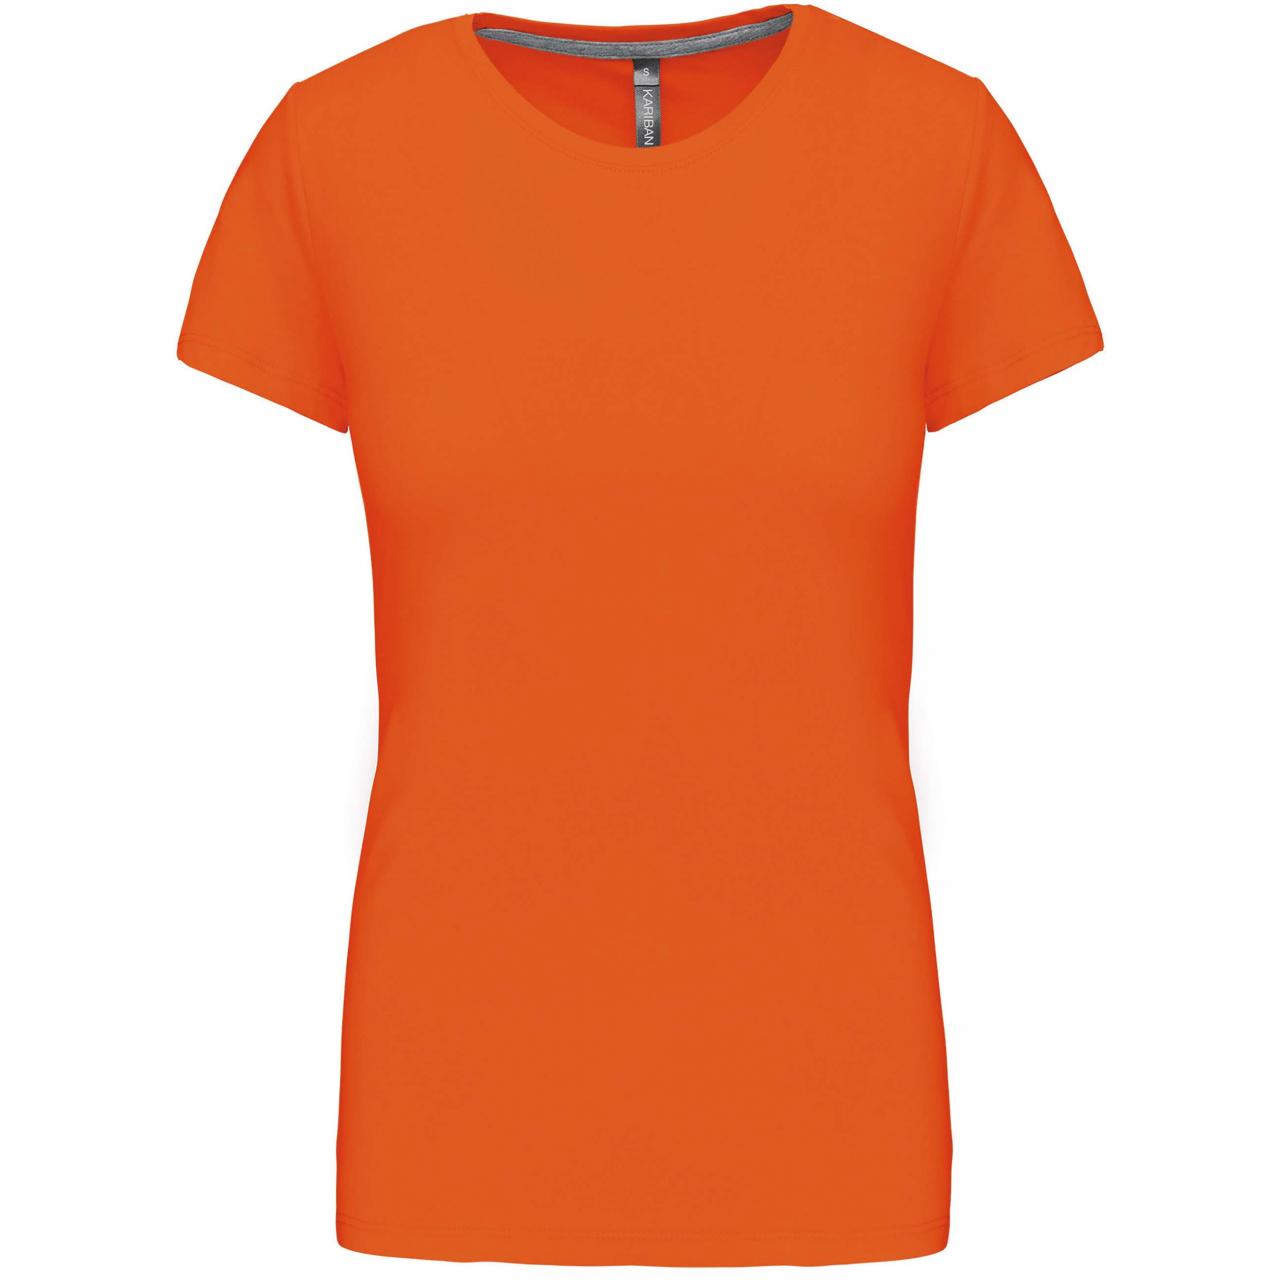 Dámské tričko Kariban s krátkým rukávem - oranžové, XXL